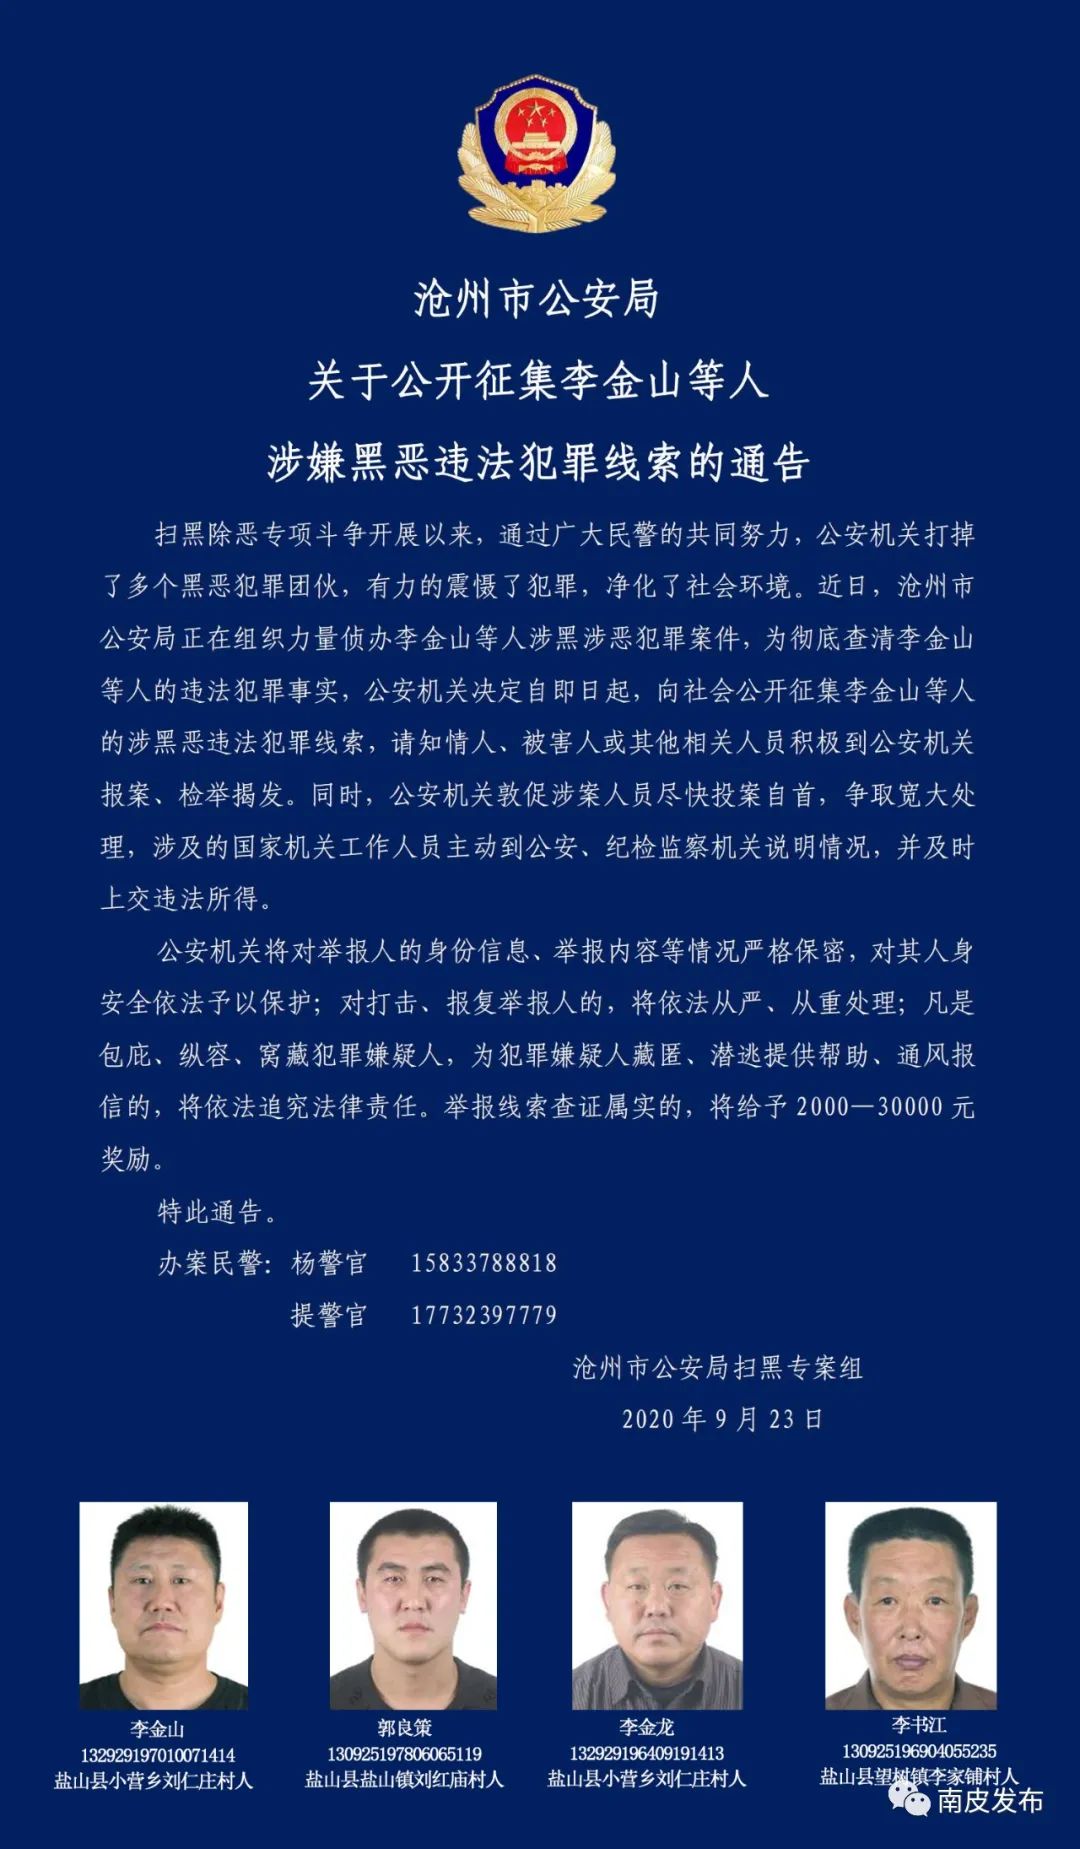 沧州市公安局关于公开征集李金山等人涉嫌黑恶违法犯罪线索的通告